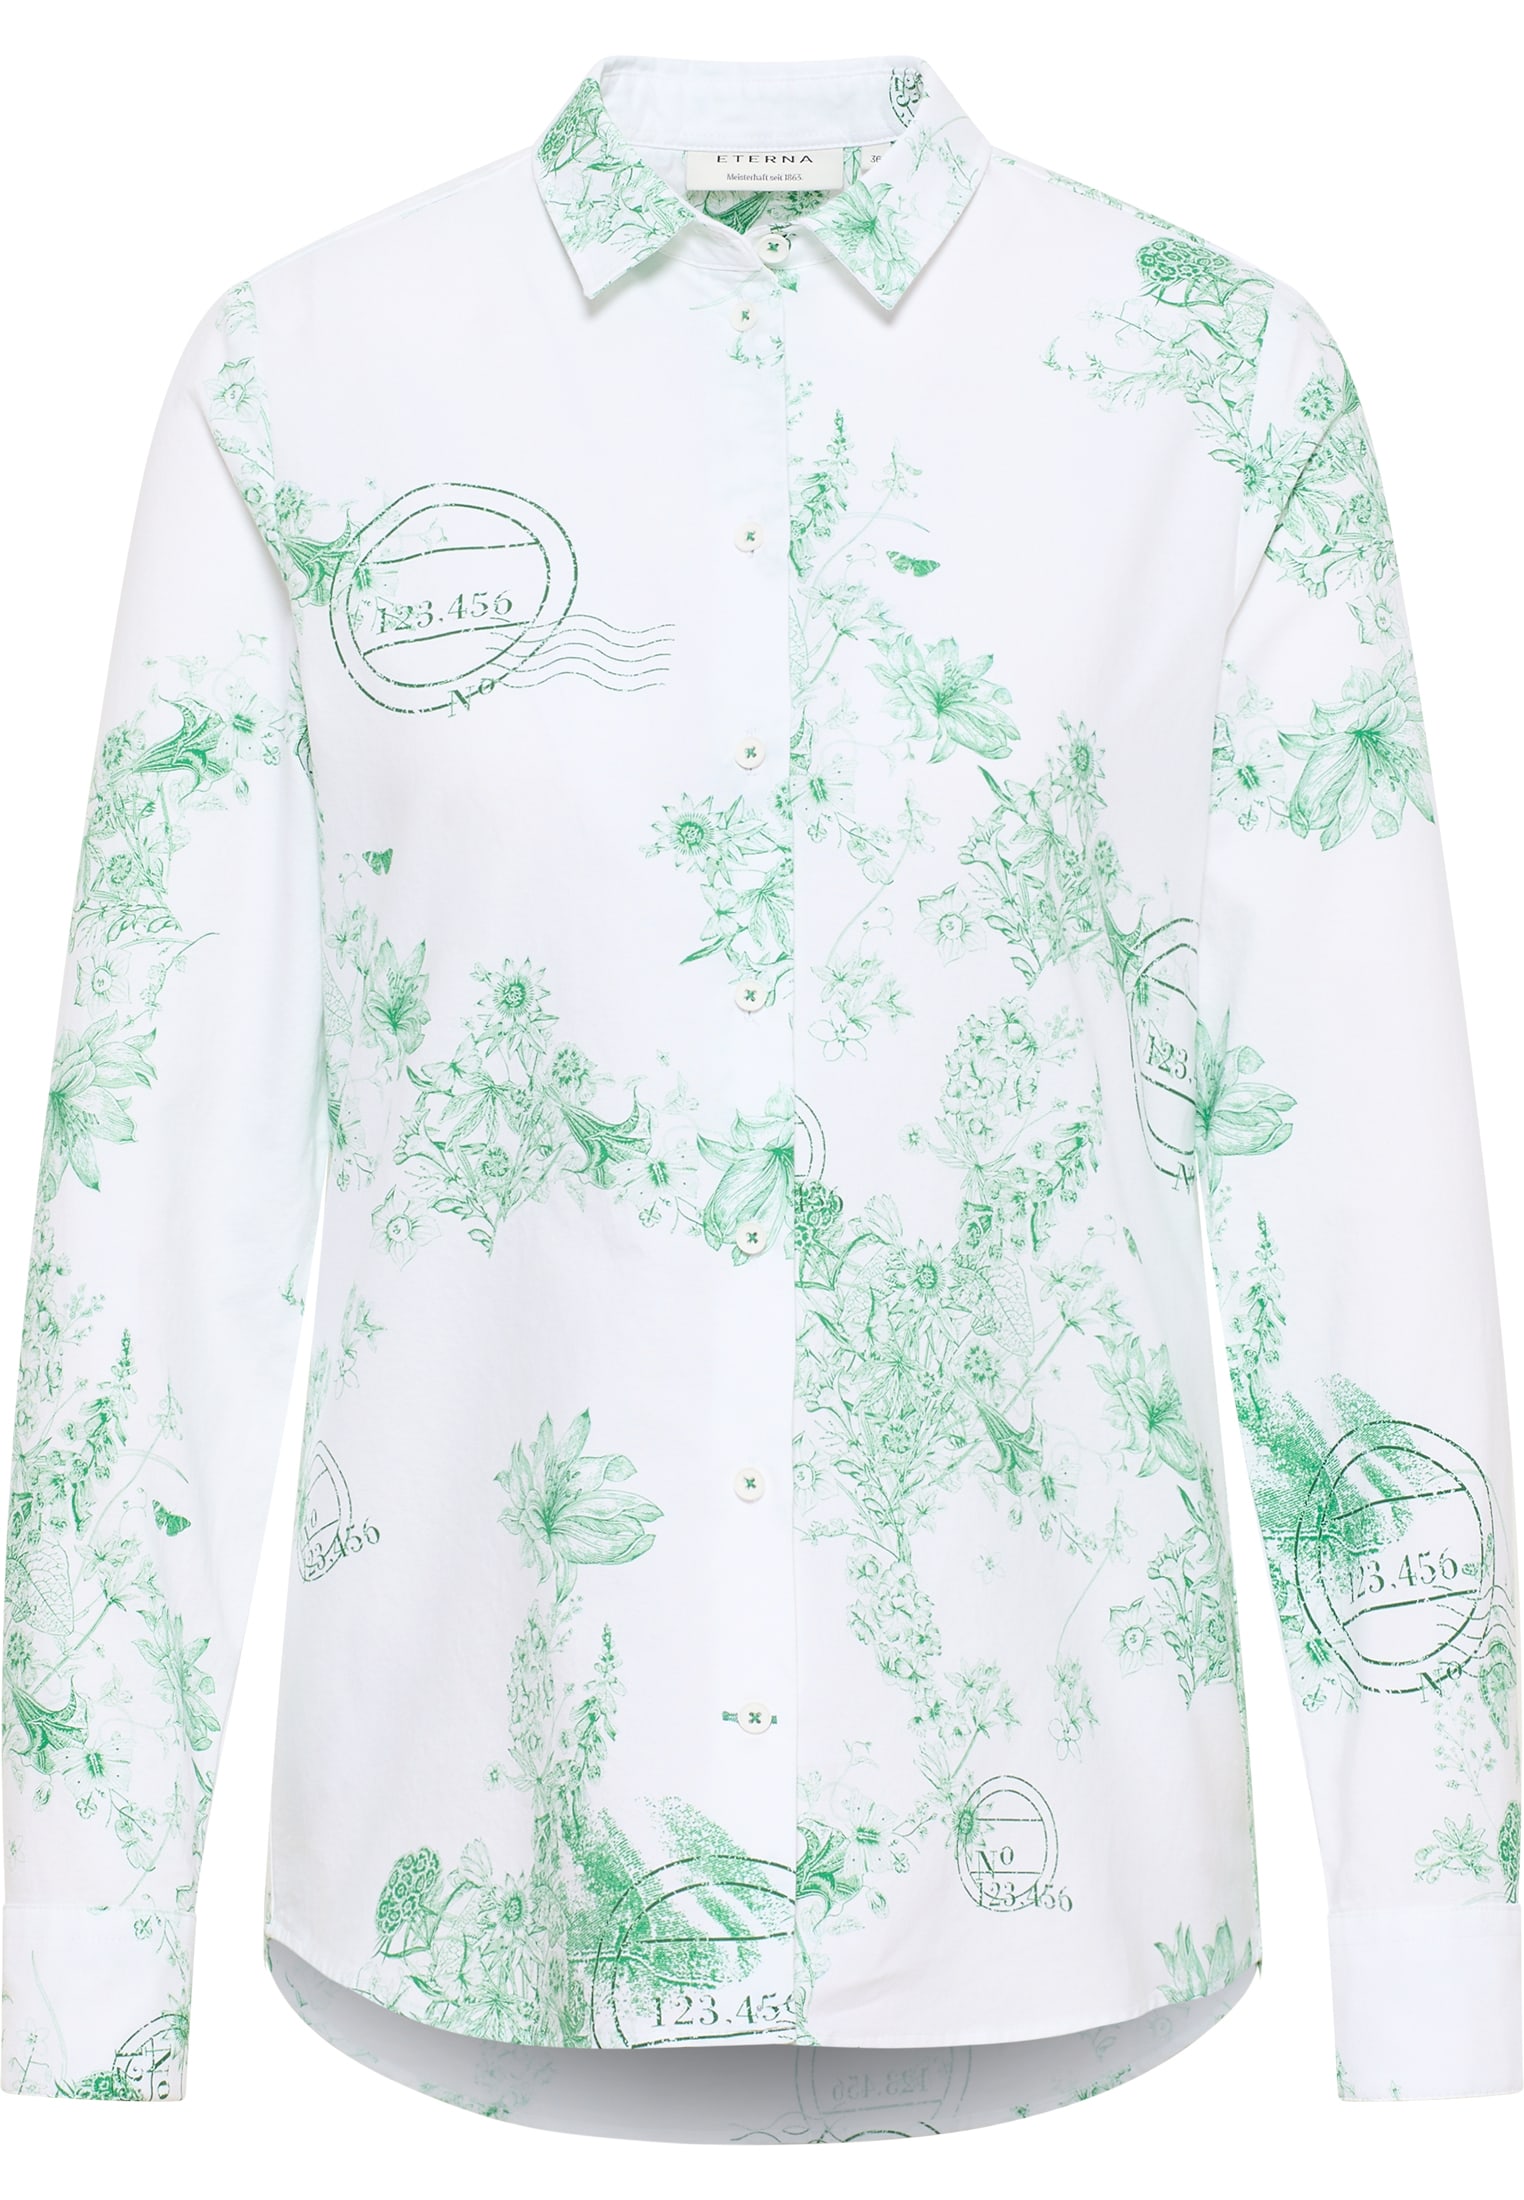 Gehen Sie zum Online-Shop! Oxford Shirt Bluse in | bedruckt | grün 2BL04169-04-01-44-1/1 Langarm | | 44 grün